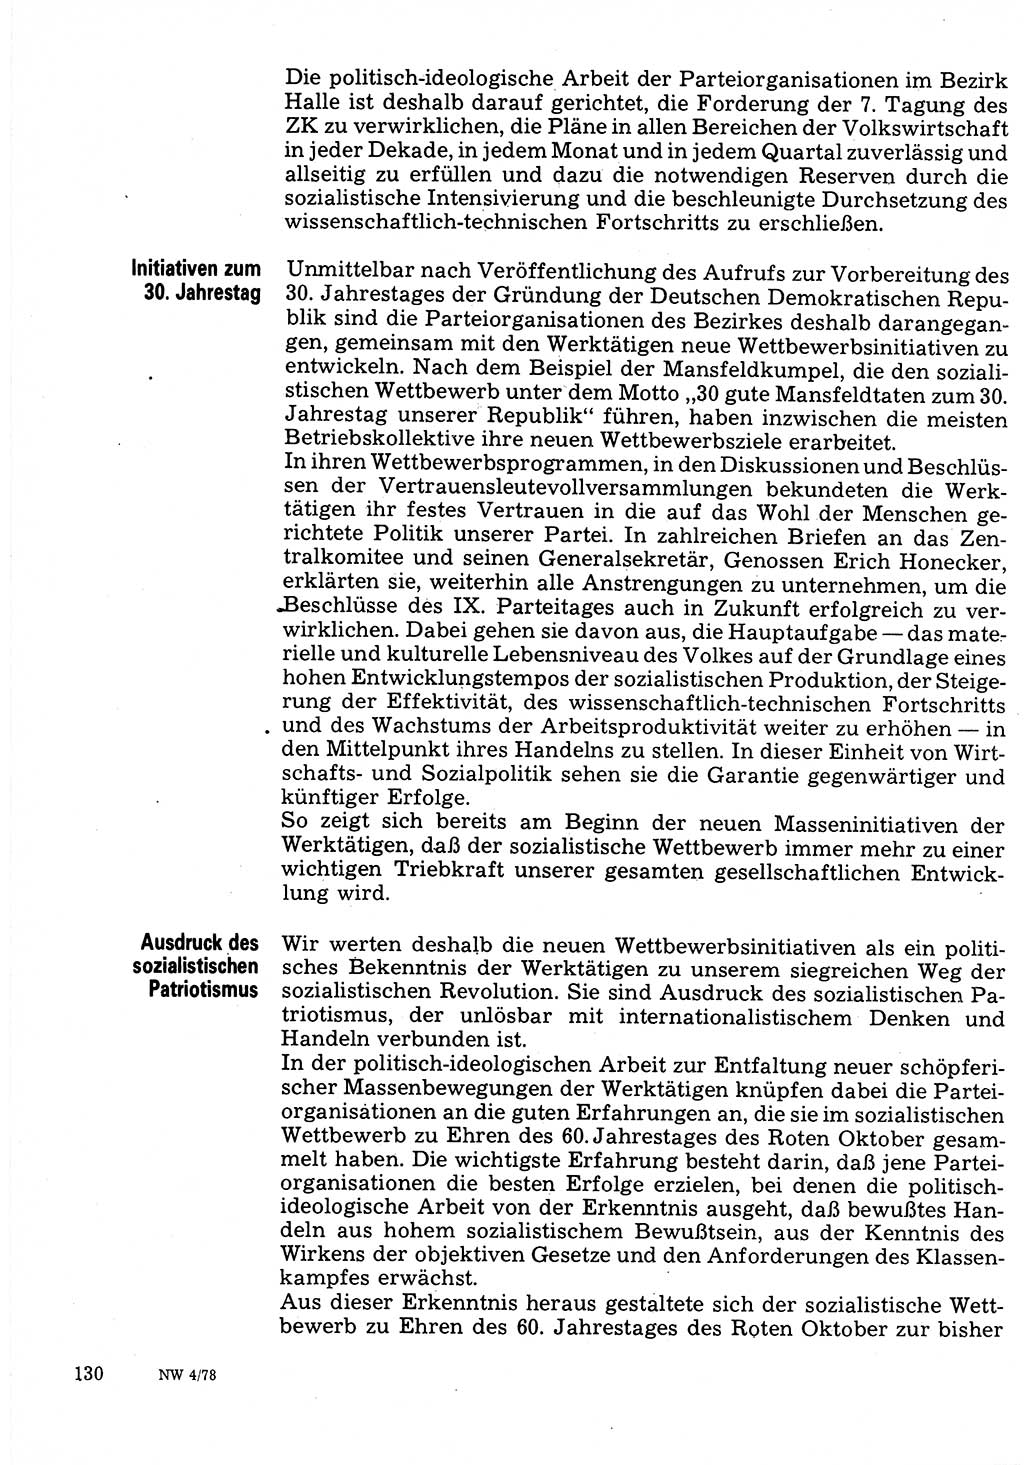 Neuer Weg (NW), Organ des Zentralkomitees (ZK) der SED (Sozialistische Einheitspartei Deutschlands) für Fragen des Parteilebens, 33. Jahrgang [Deutsche Demokratische Republik (DDR)] 1978, Seite 130 (NW ZK SED DDR 1978, S. 130)